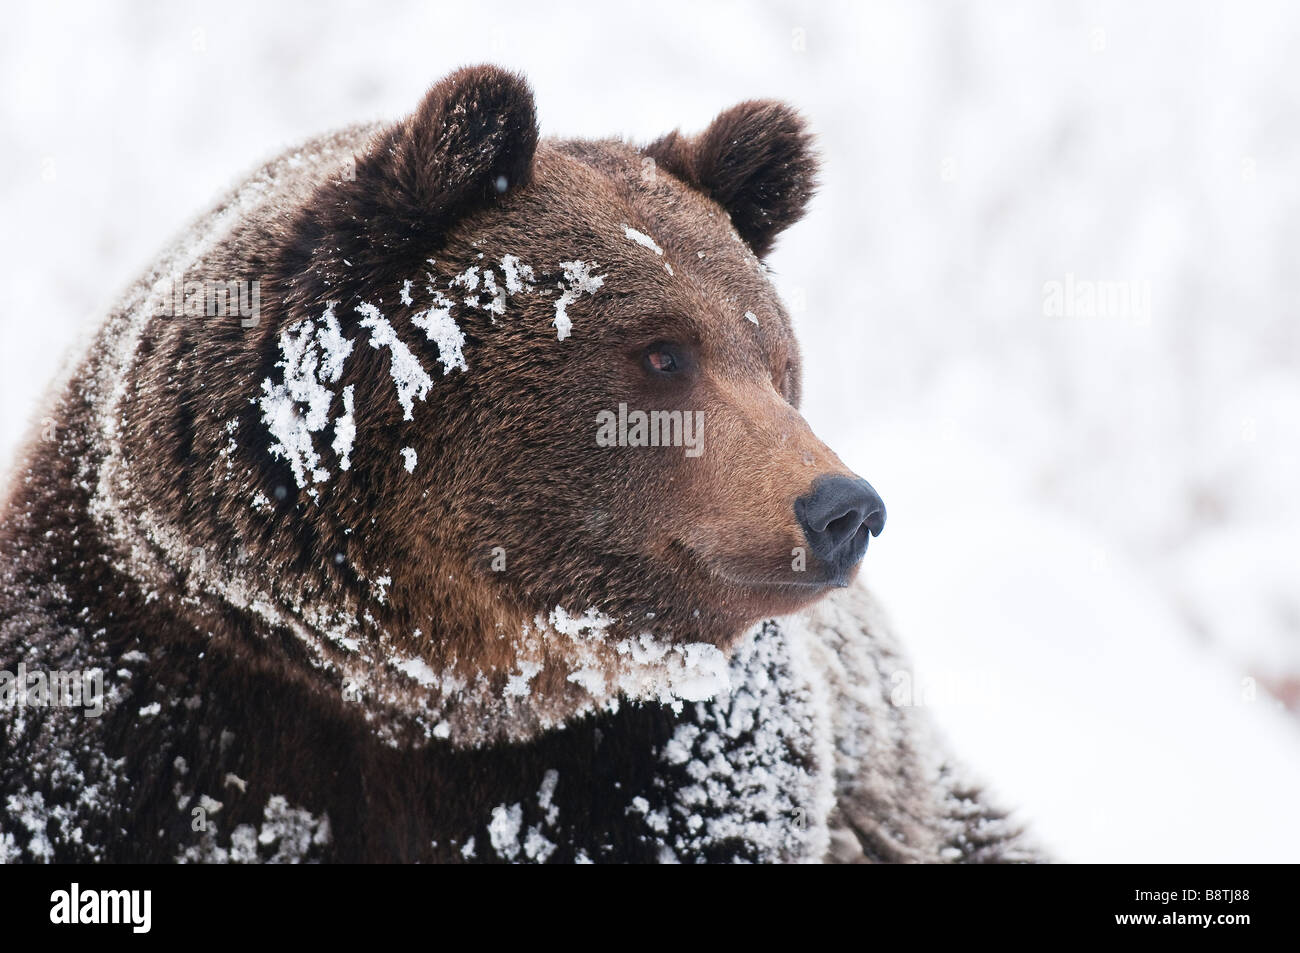 Questo orso bruno in una bavarian national park svegliati dal letargo invernale e guardai intorno tra freschi caduta di neve Foto Stock